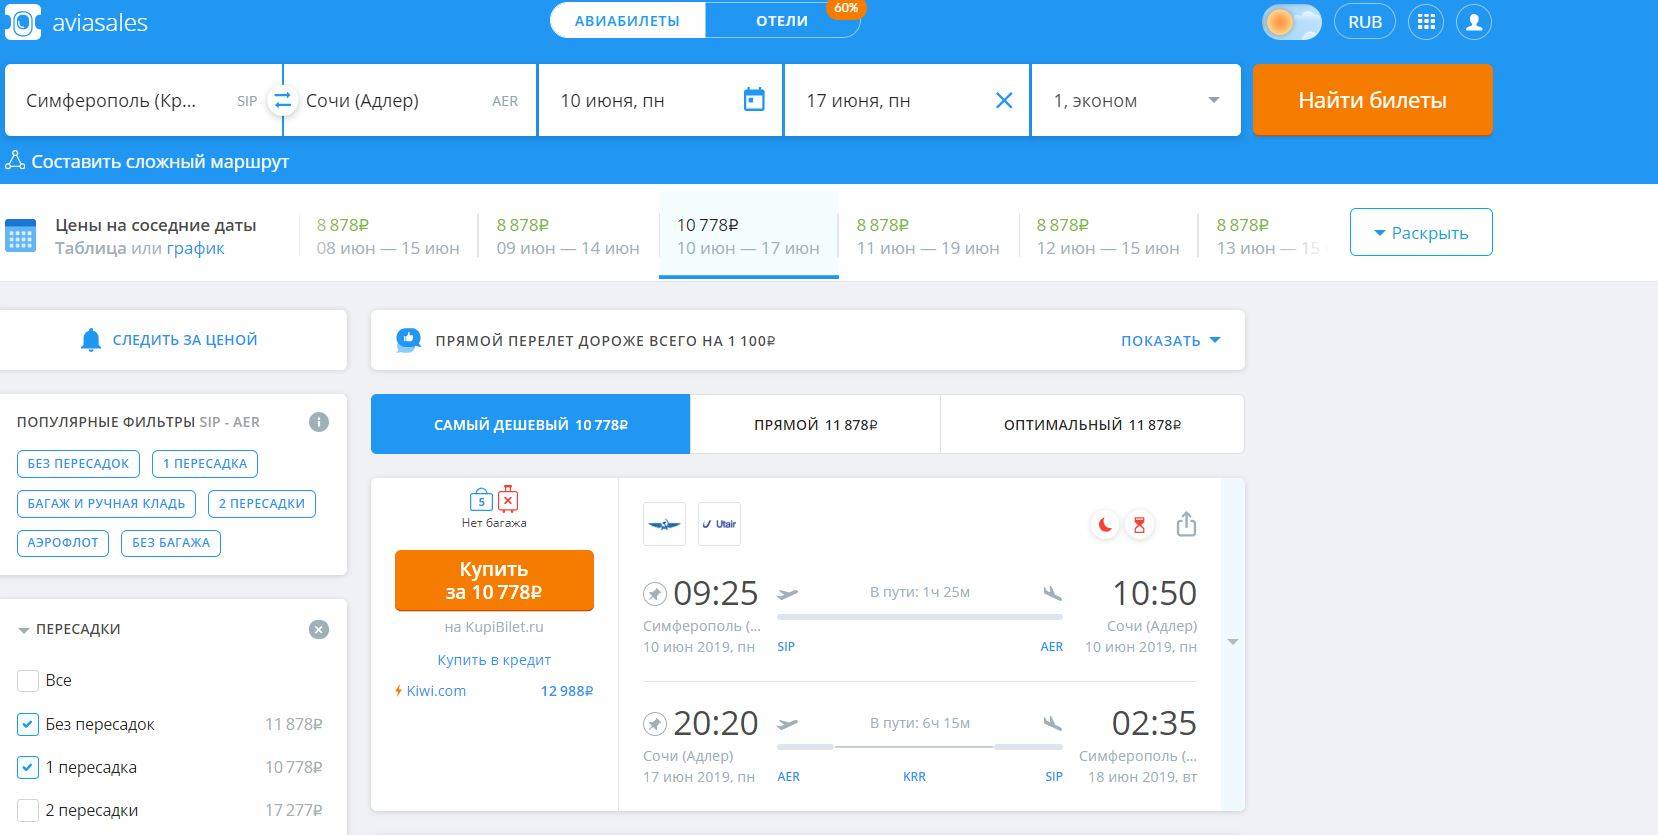 Сайты выгодных цен на авиабилеты москва домодедово купить авиабилеты